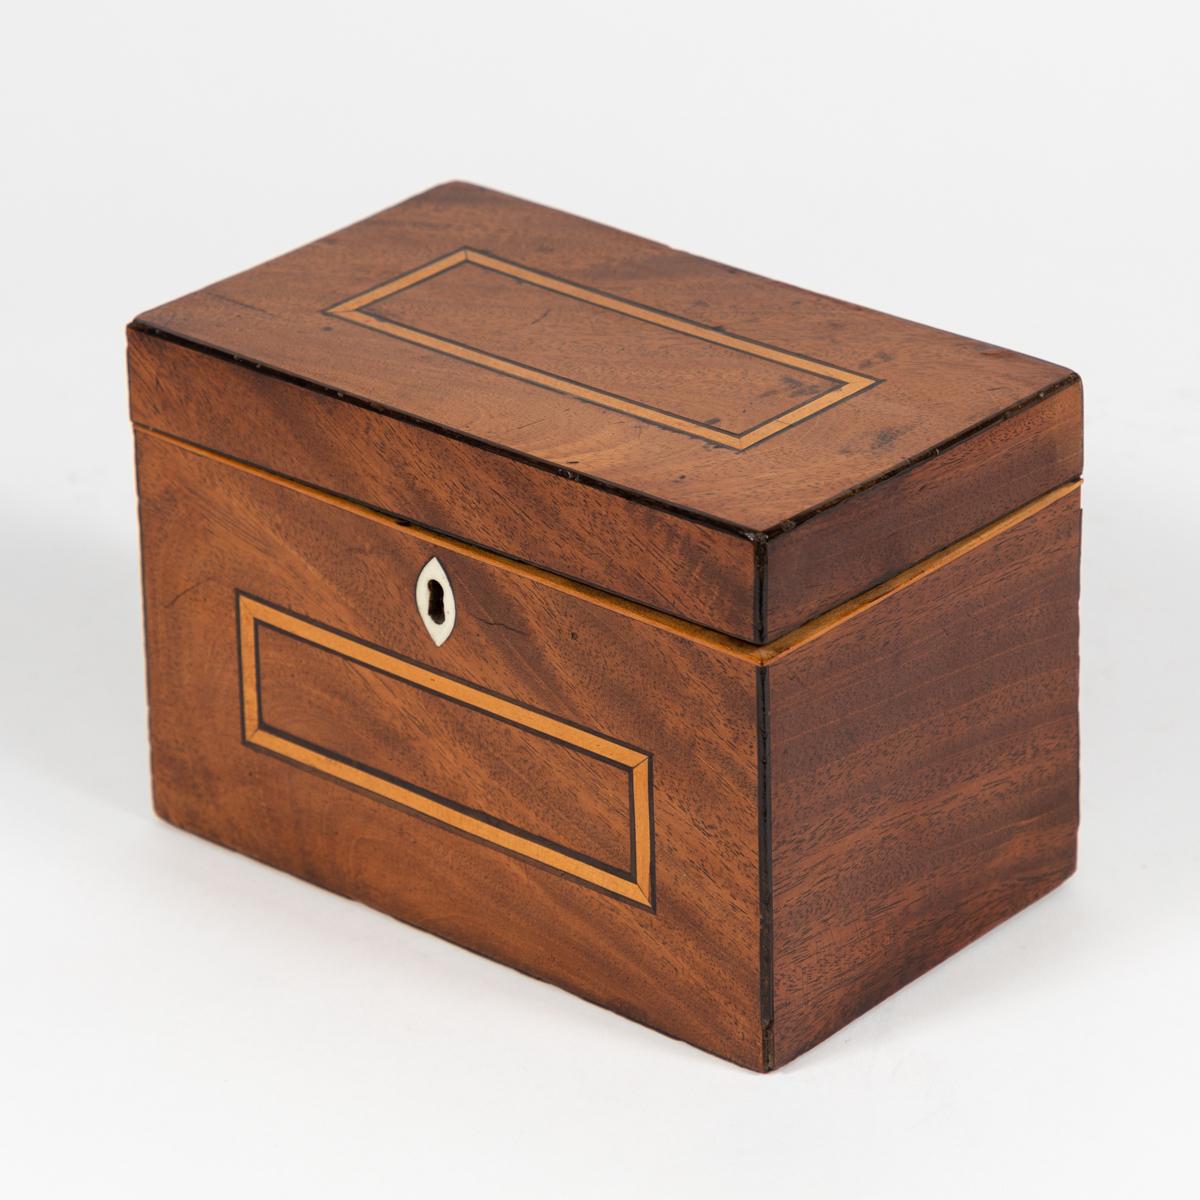 Georgian mahogany tea caddy box from England, circa 1825.